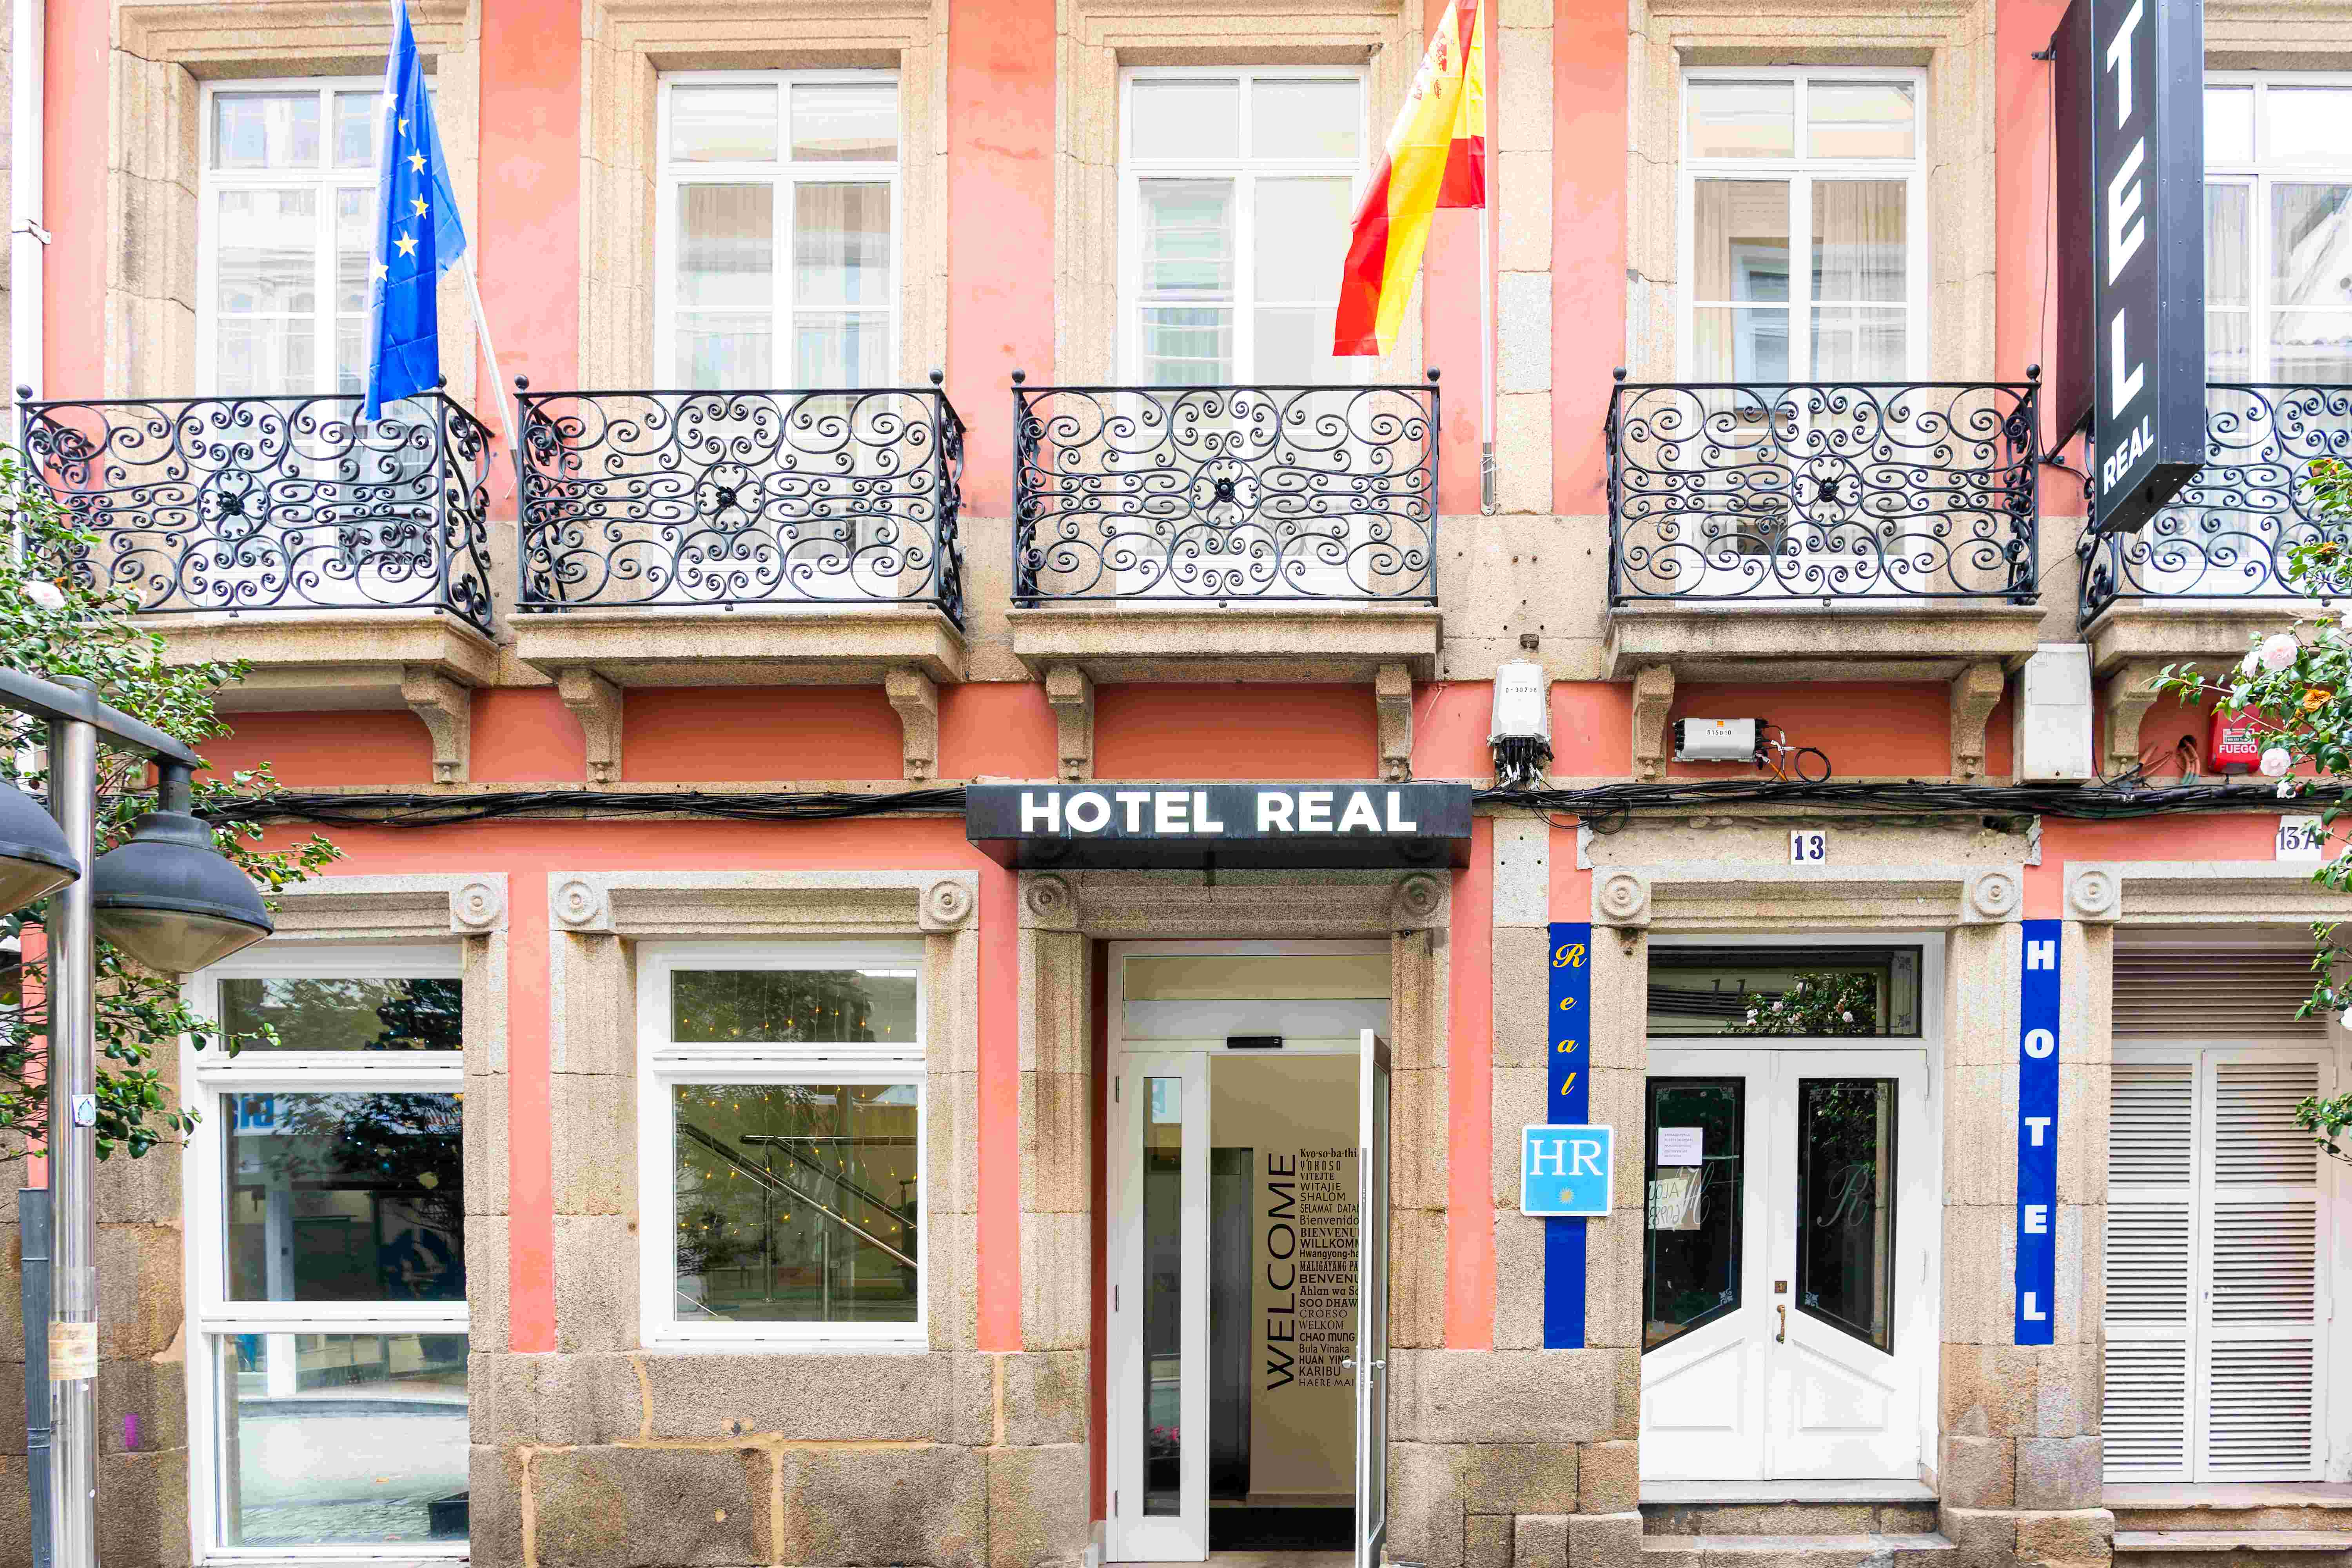 Hotel Real Ferrol - Ferrol